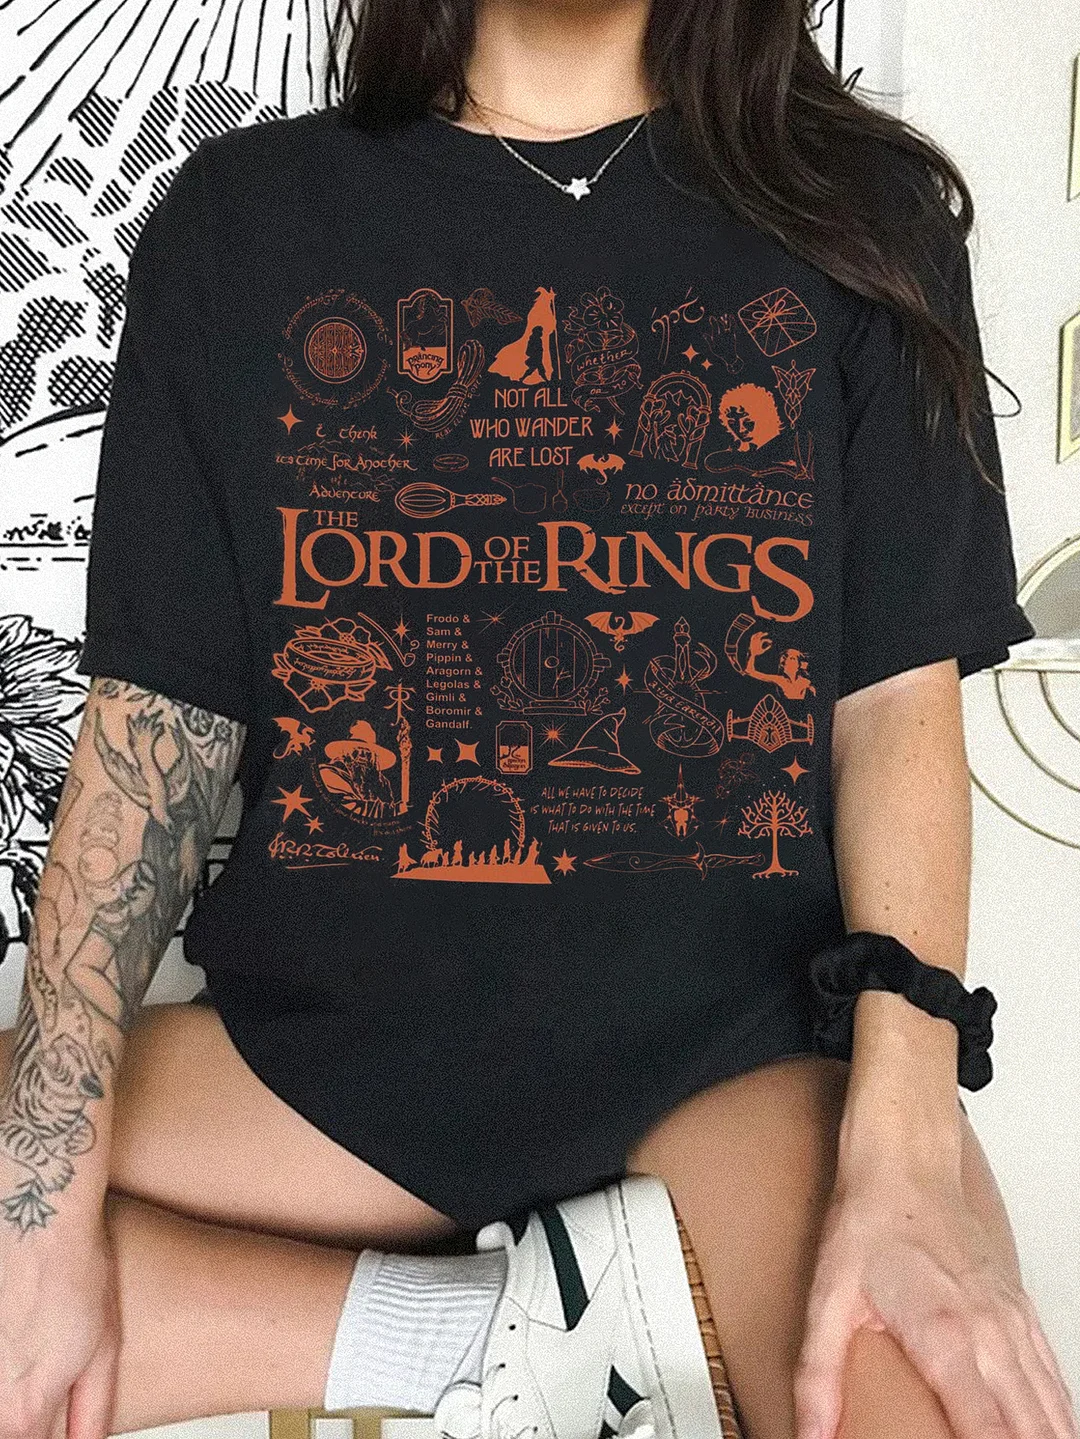 Aragorn Gandalf Frodo Baggins Tshirt / DarkAcademias /Darkacademias